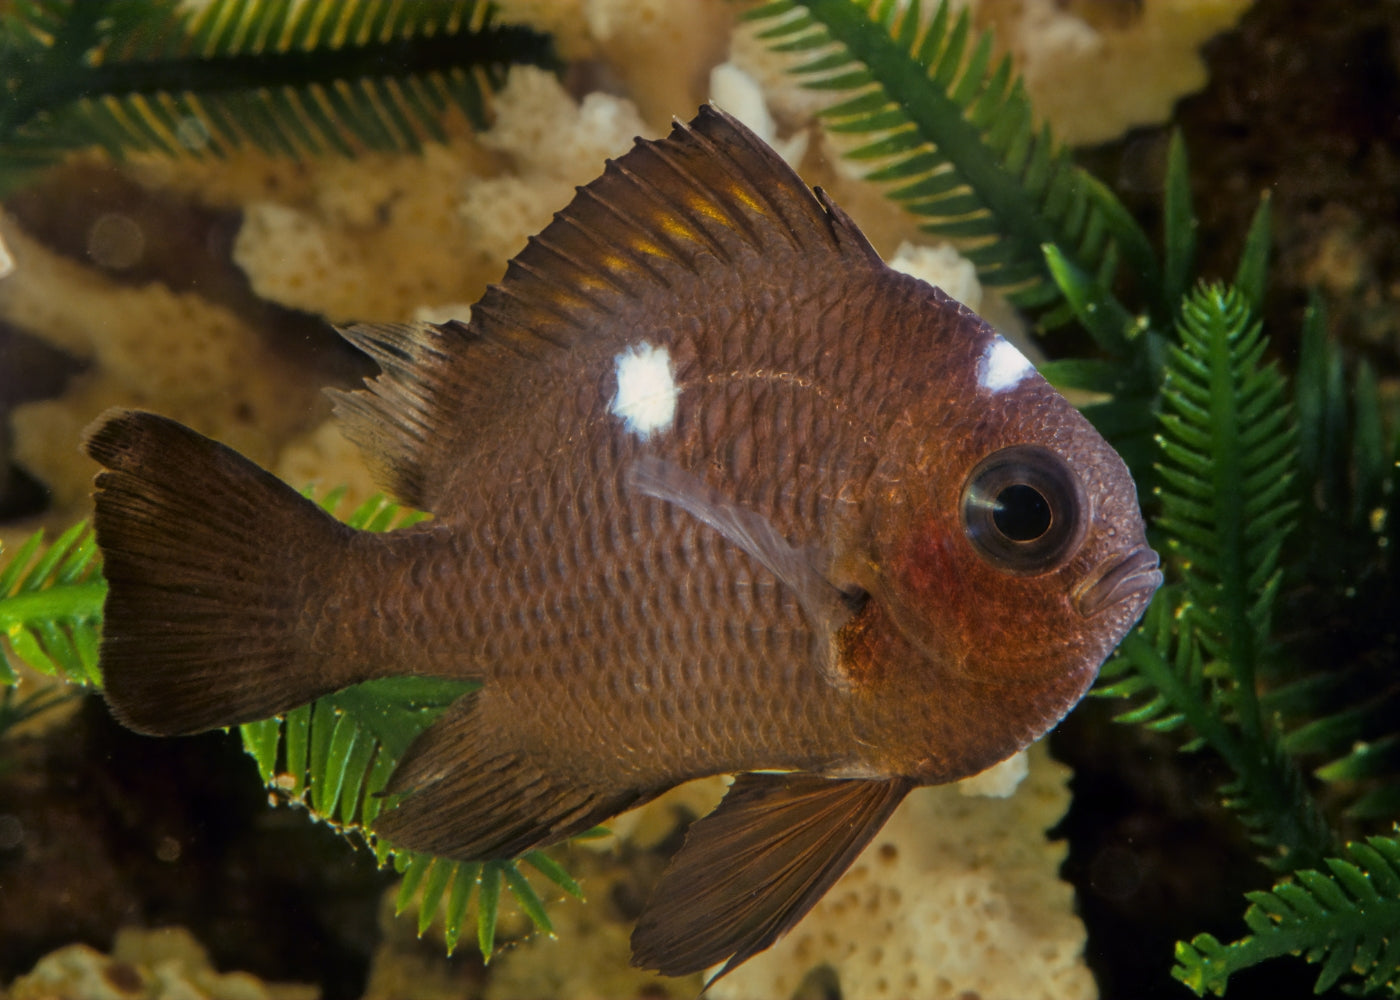 threespot dascyllus | Marine fish for sale online | Coburg aquarium